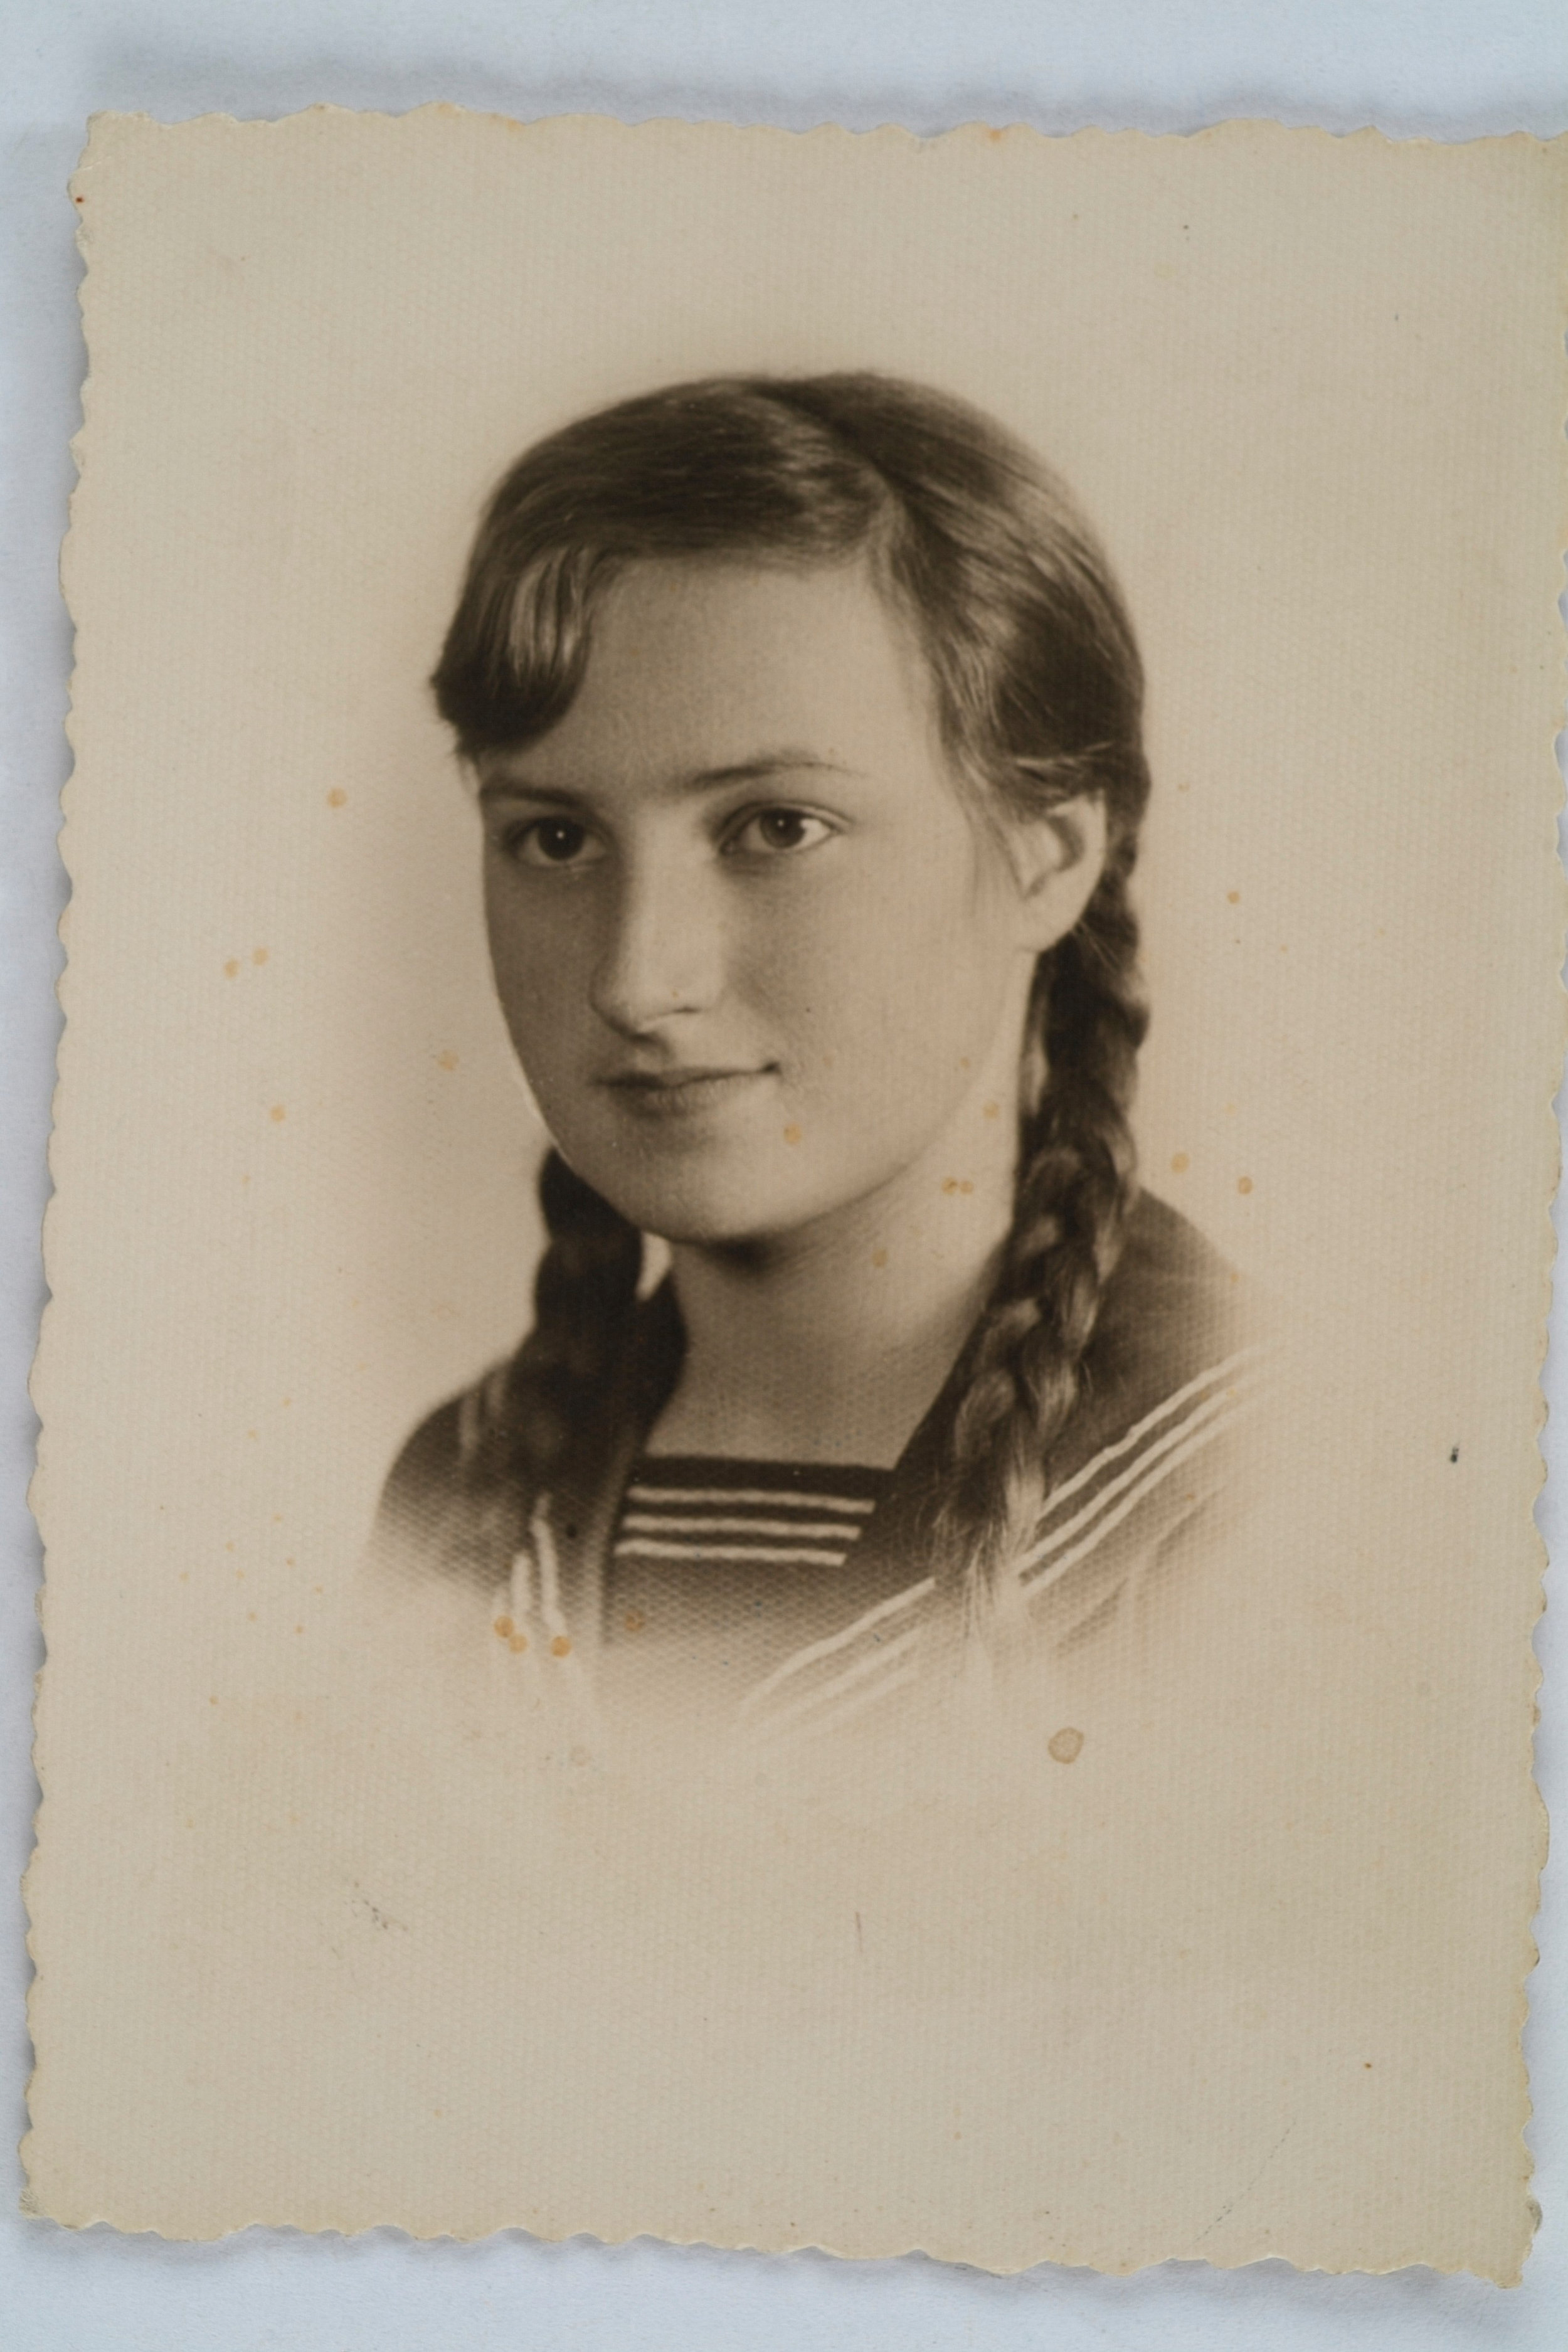 Wanda Poltawska as a young girl